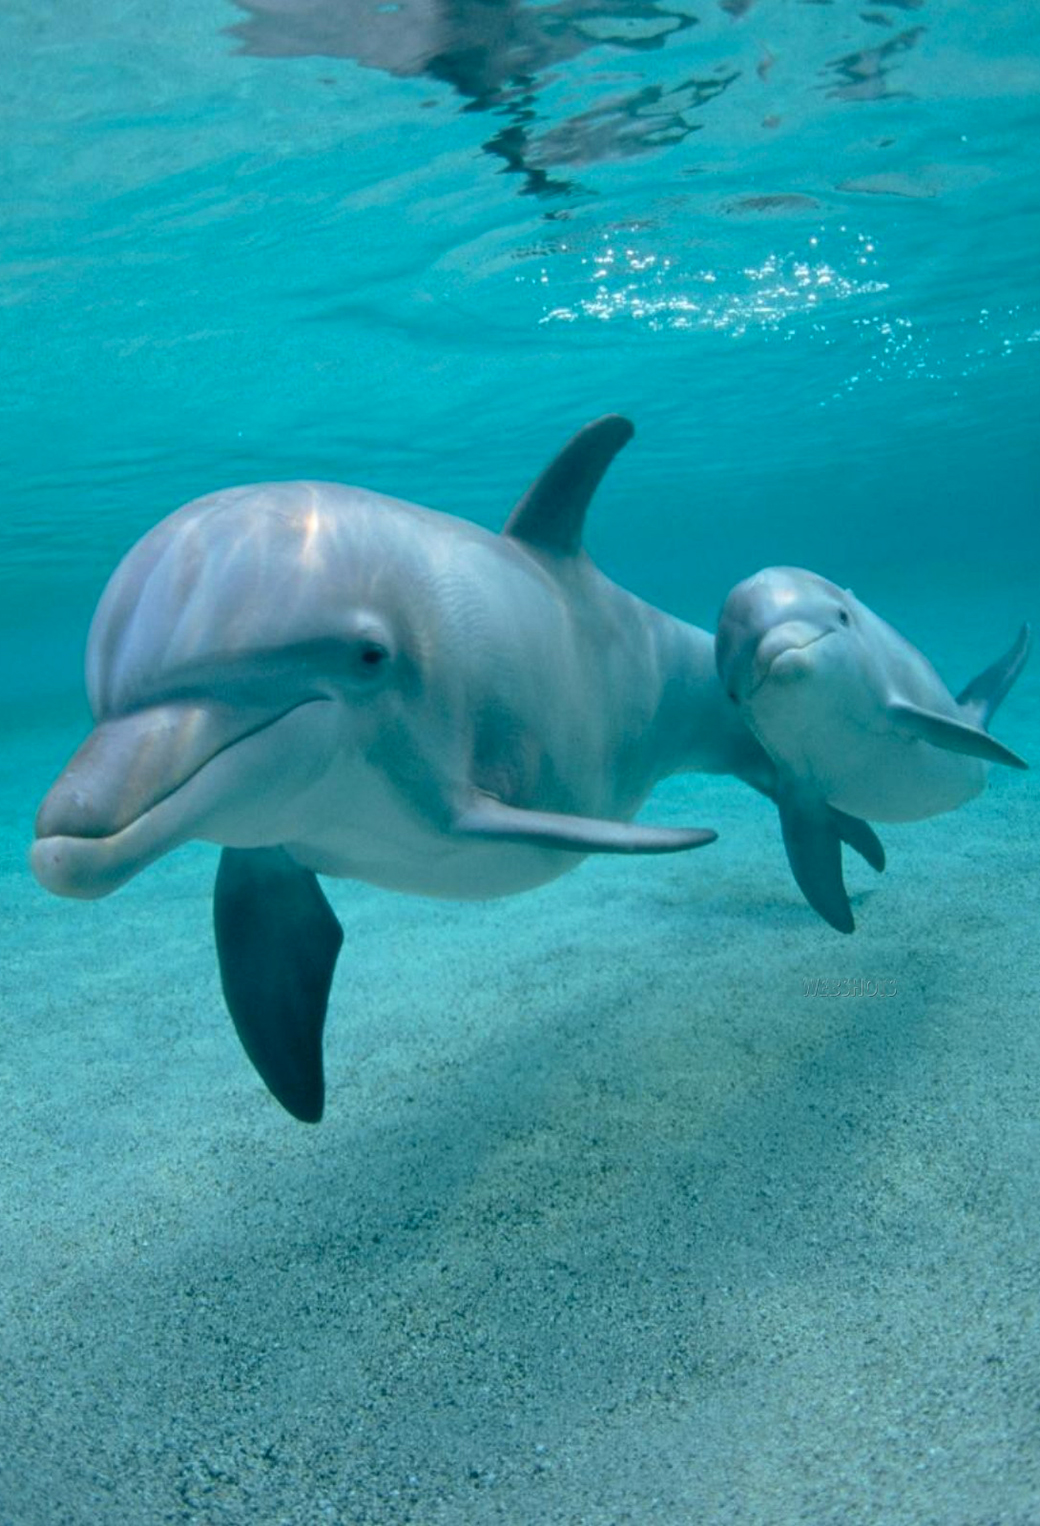 sfondi iphone delfino,delfino di tursiope comune,delfino,delfino tursiope,mammifero marino,delfino comune dal becco corto